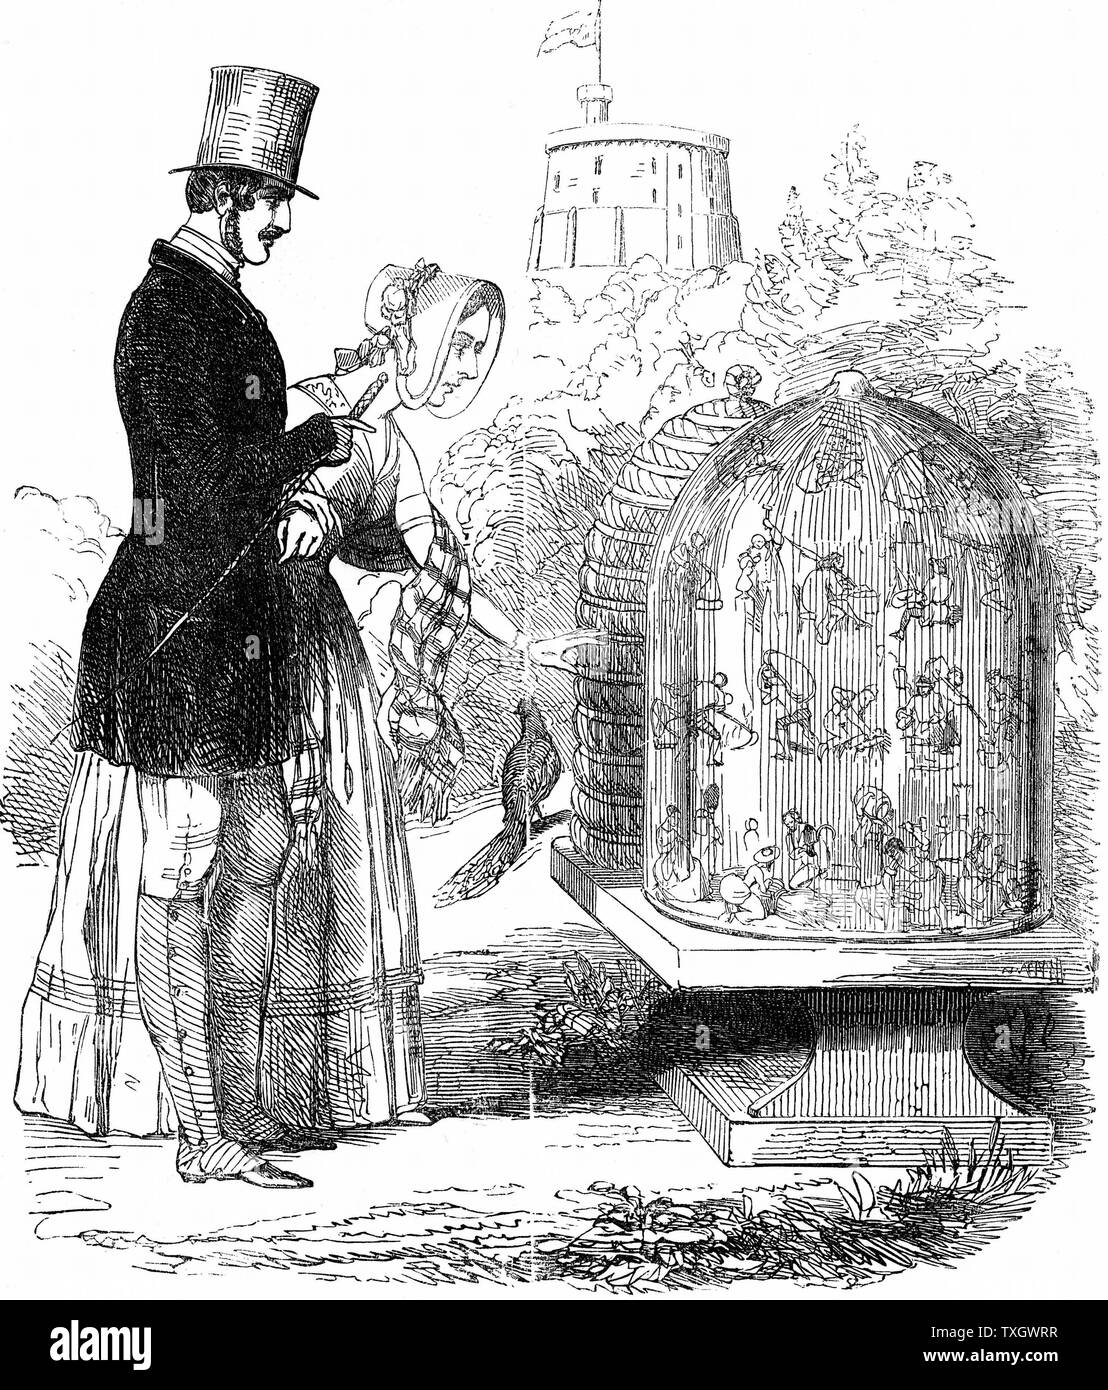 Albert (1819-1861) Prince Consort de la reine Victoria, a permis d'introduire des ruches dans les ruchers royale, permettant de récolter le miel et la ruche (travailleurs) préservé avec juste assez de miel pour exister au cours de l'hiver. 1844 Albert montrant ses ruches à Victoria Caricature de 'Punch', assimilant les abeilles avec des ouvriers britanniques exploités Banque D'Images